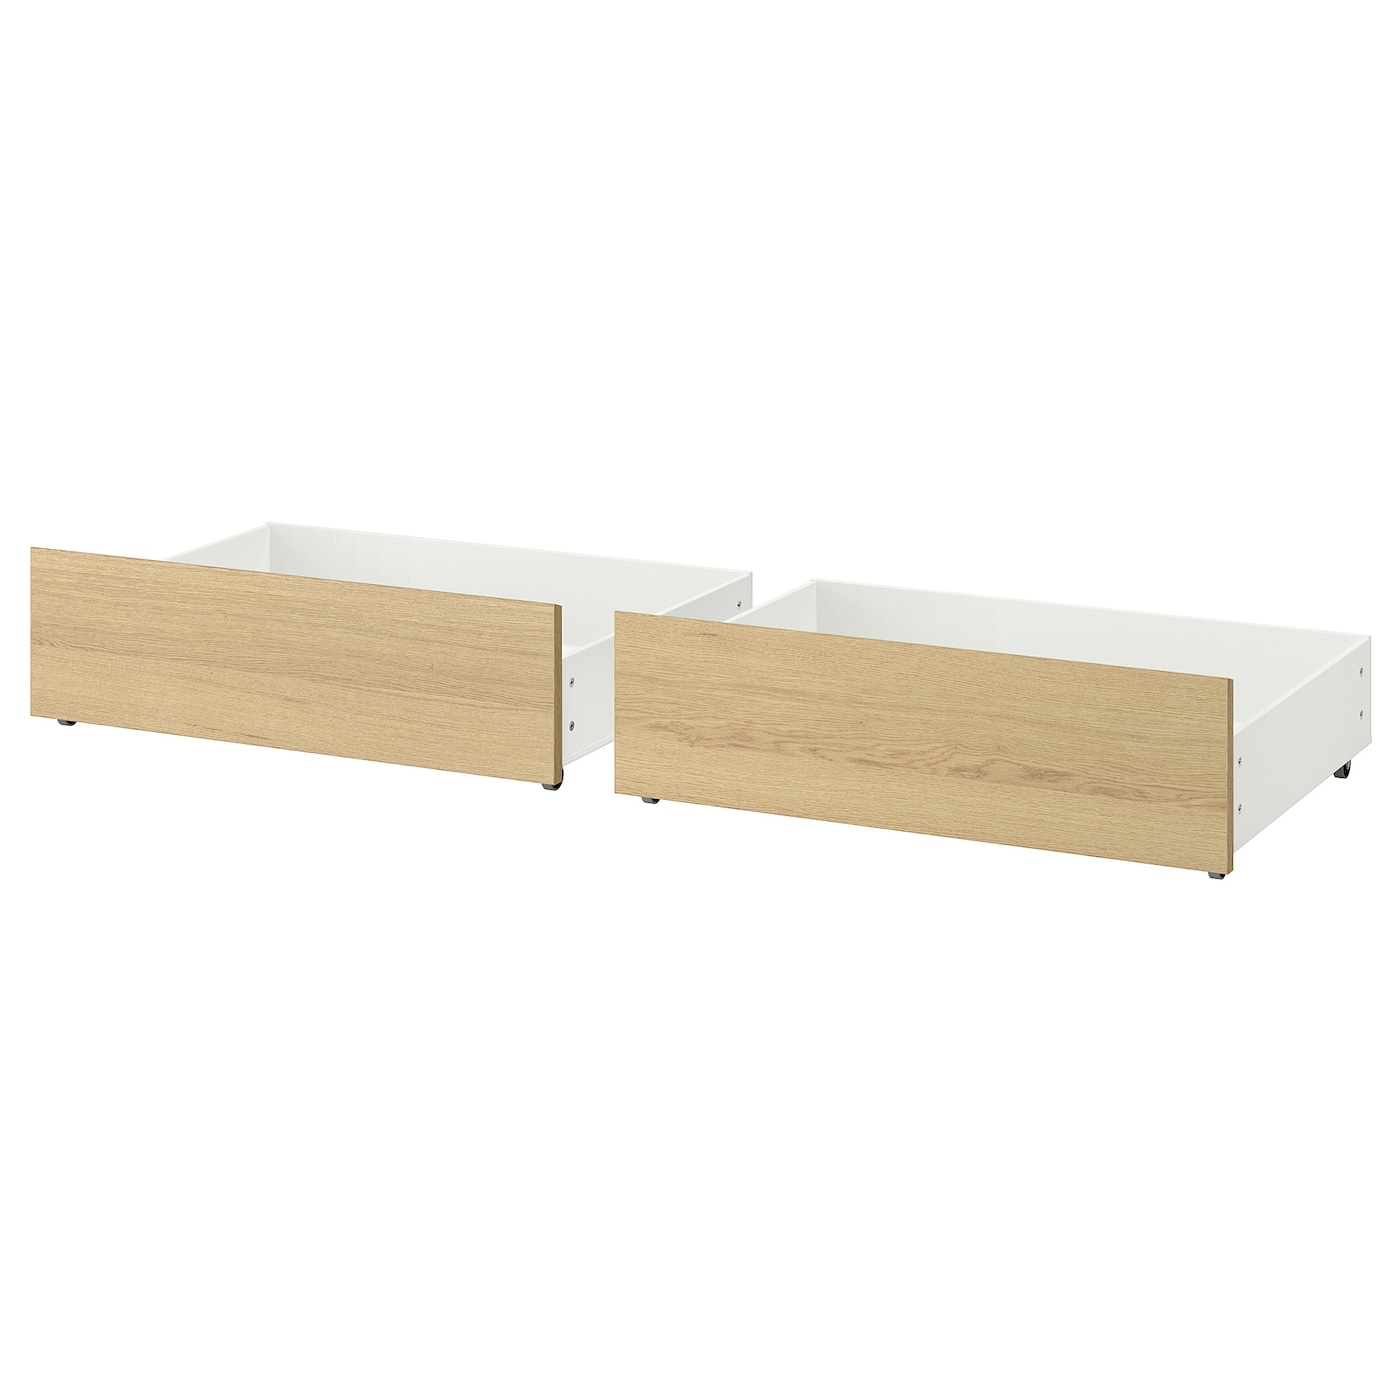 Ящик д/высокого каркаса кровати - IKEA MALM, дубовый шпон, беленый, 200 см МАЛЬМ ИКЕА